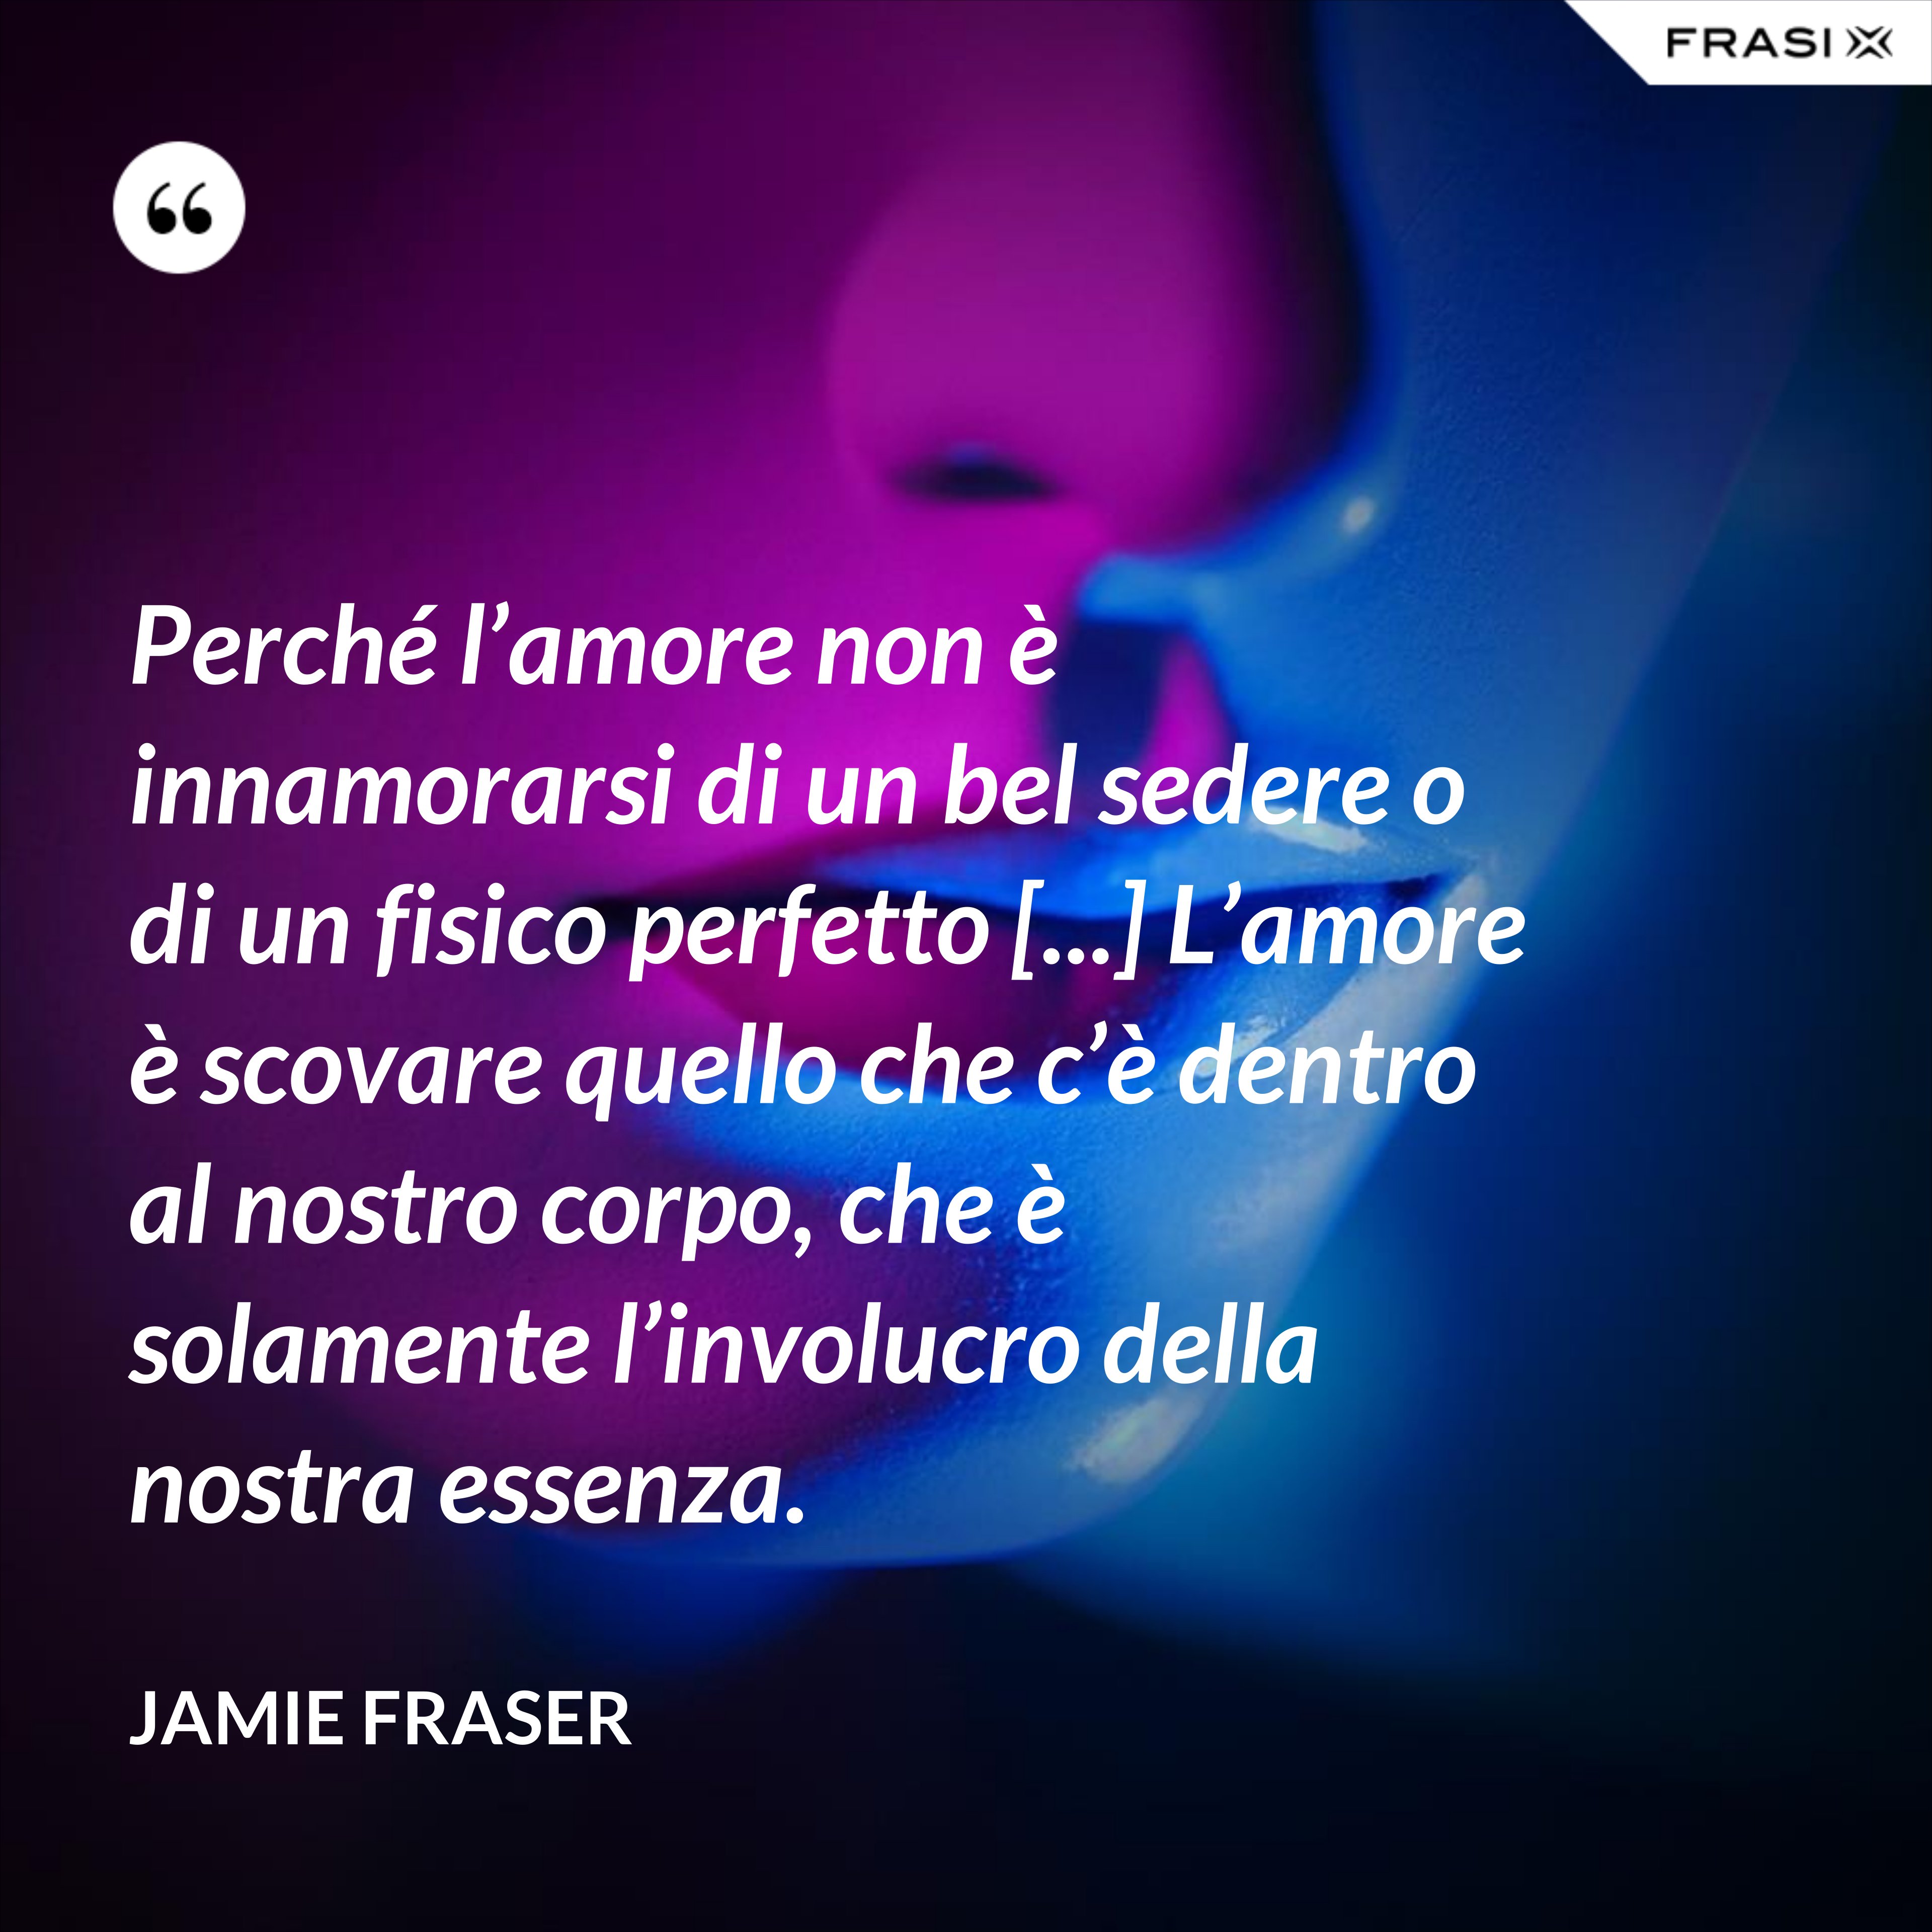 Perché l’amore non è innamorarsi di un bel sedere o di un fisico perfetto [...] L’amore è scovare quello che c’è dentro al nostro corpo, che è solamente l’involucro della nostra essenza. - Jamie Fraser